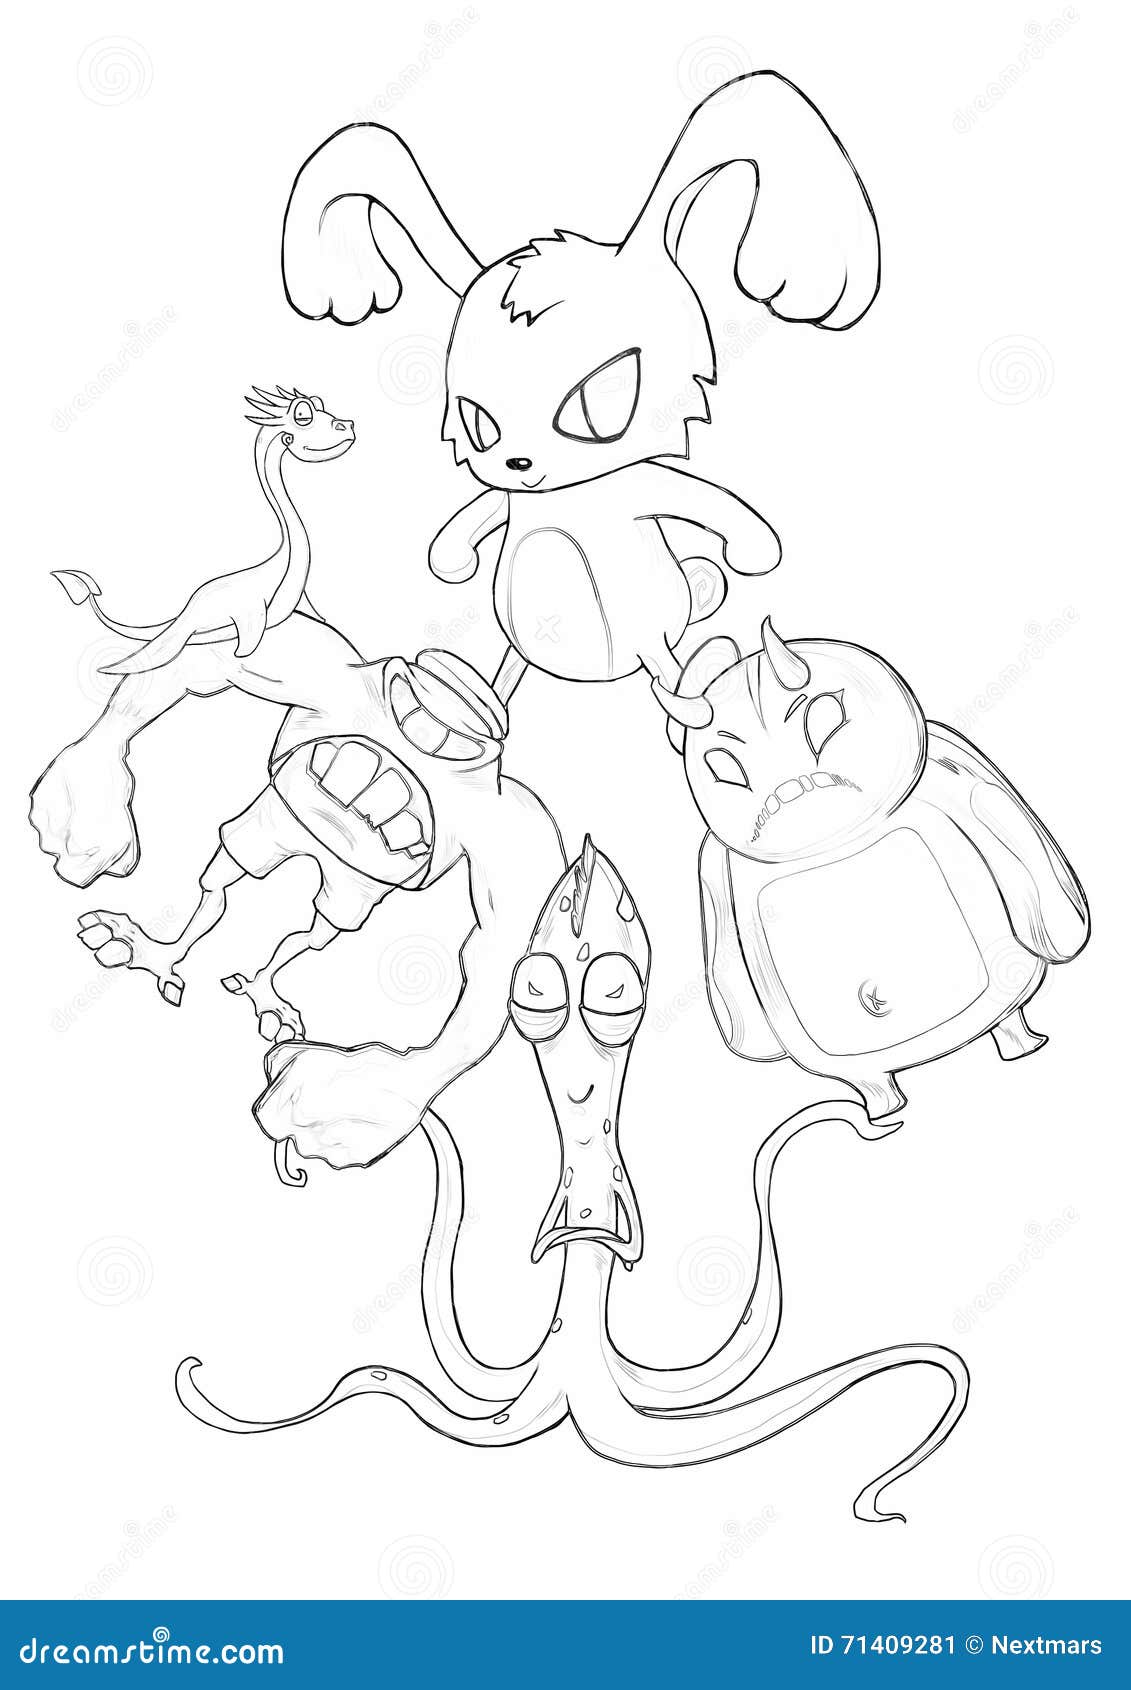 Illustration Serie De Livre De Coloriage Kung Fu Rabbit Et Ses Monstres De Mauvais Cul Du Battement Deux D Amis Illustration Stock Illustration Du Rabbit Monstres 71409281